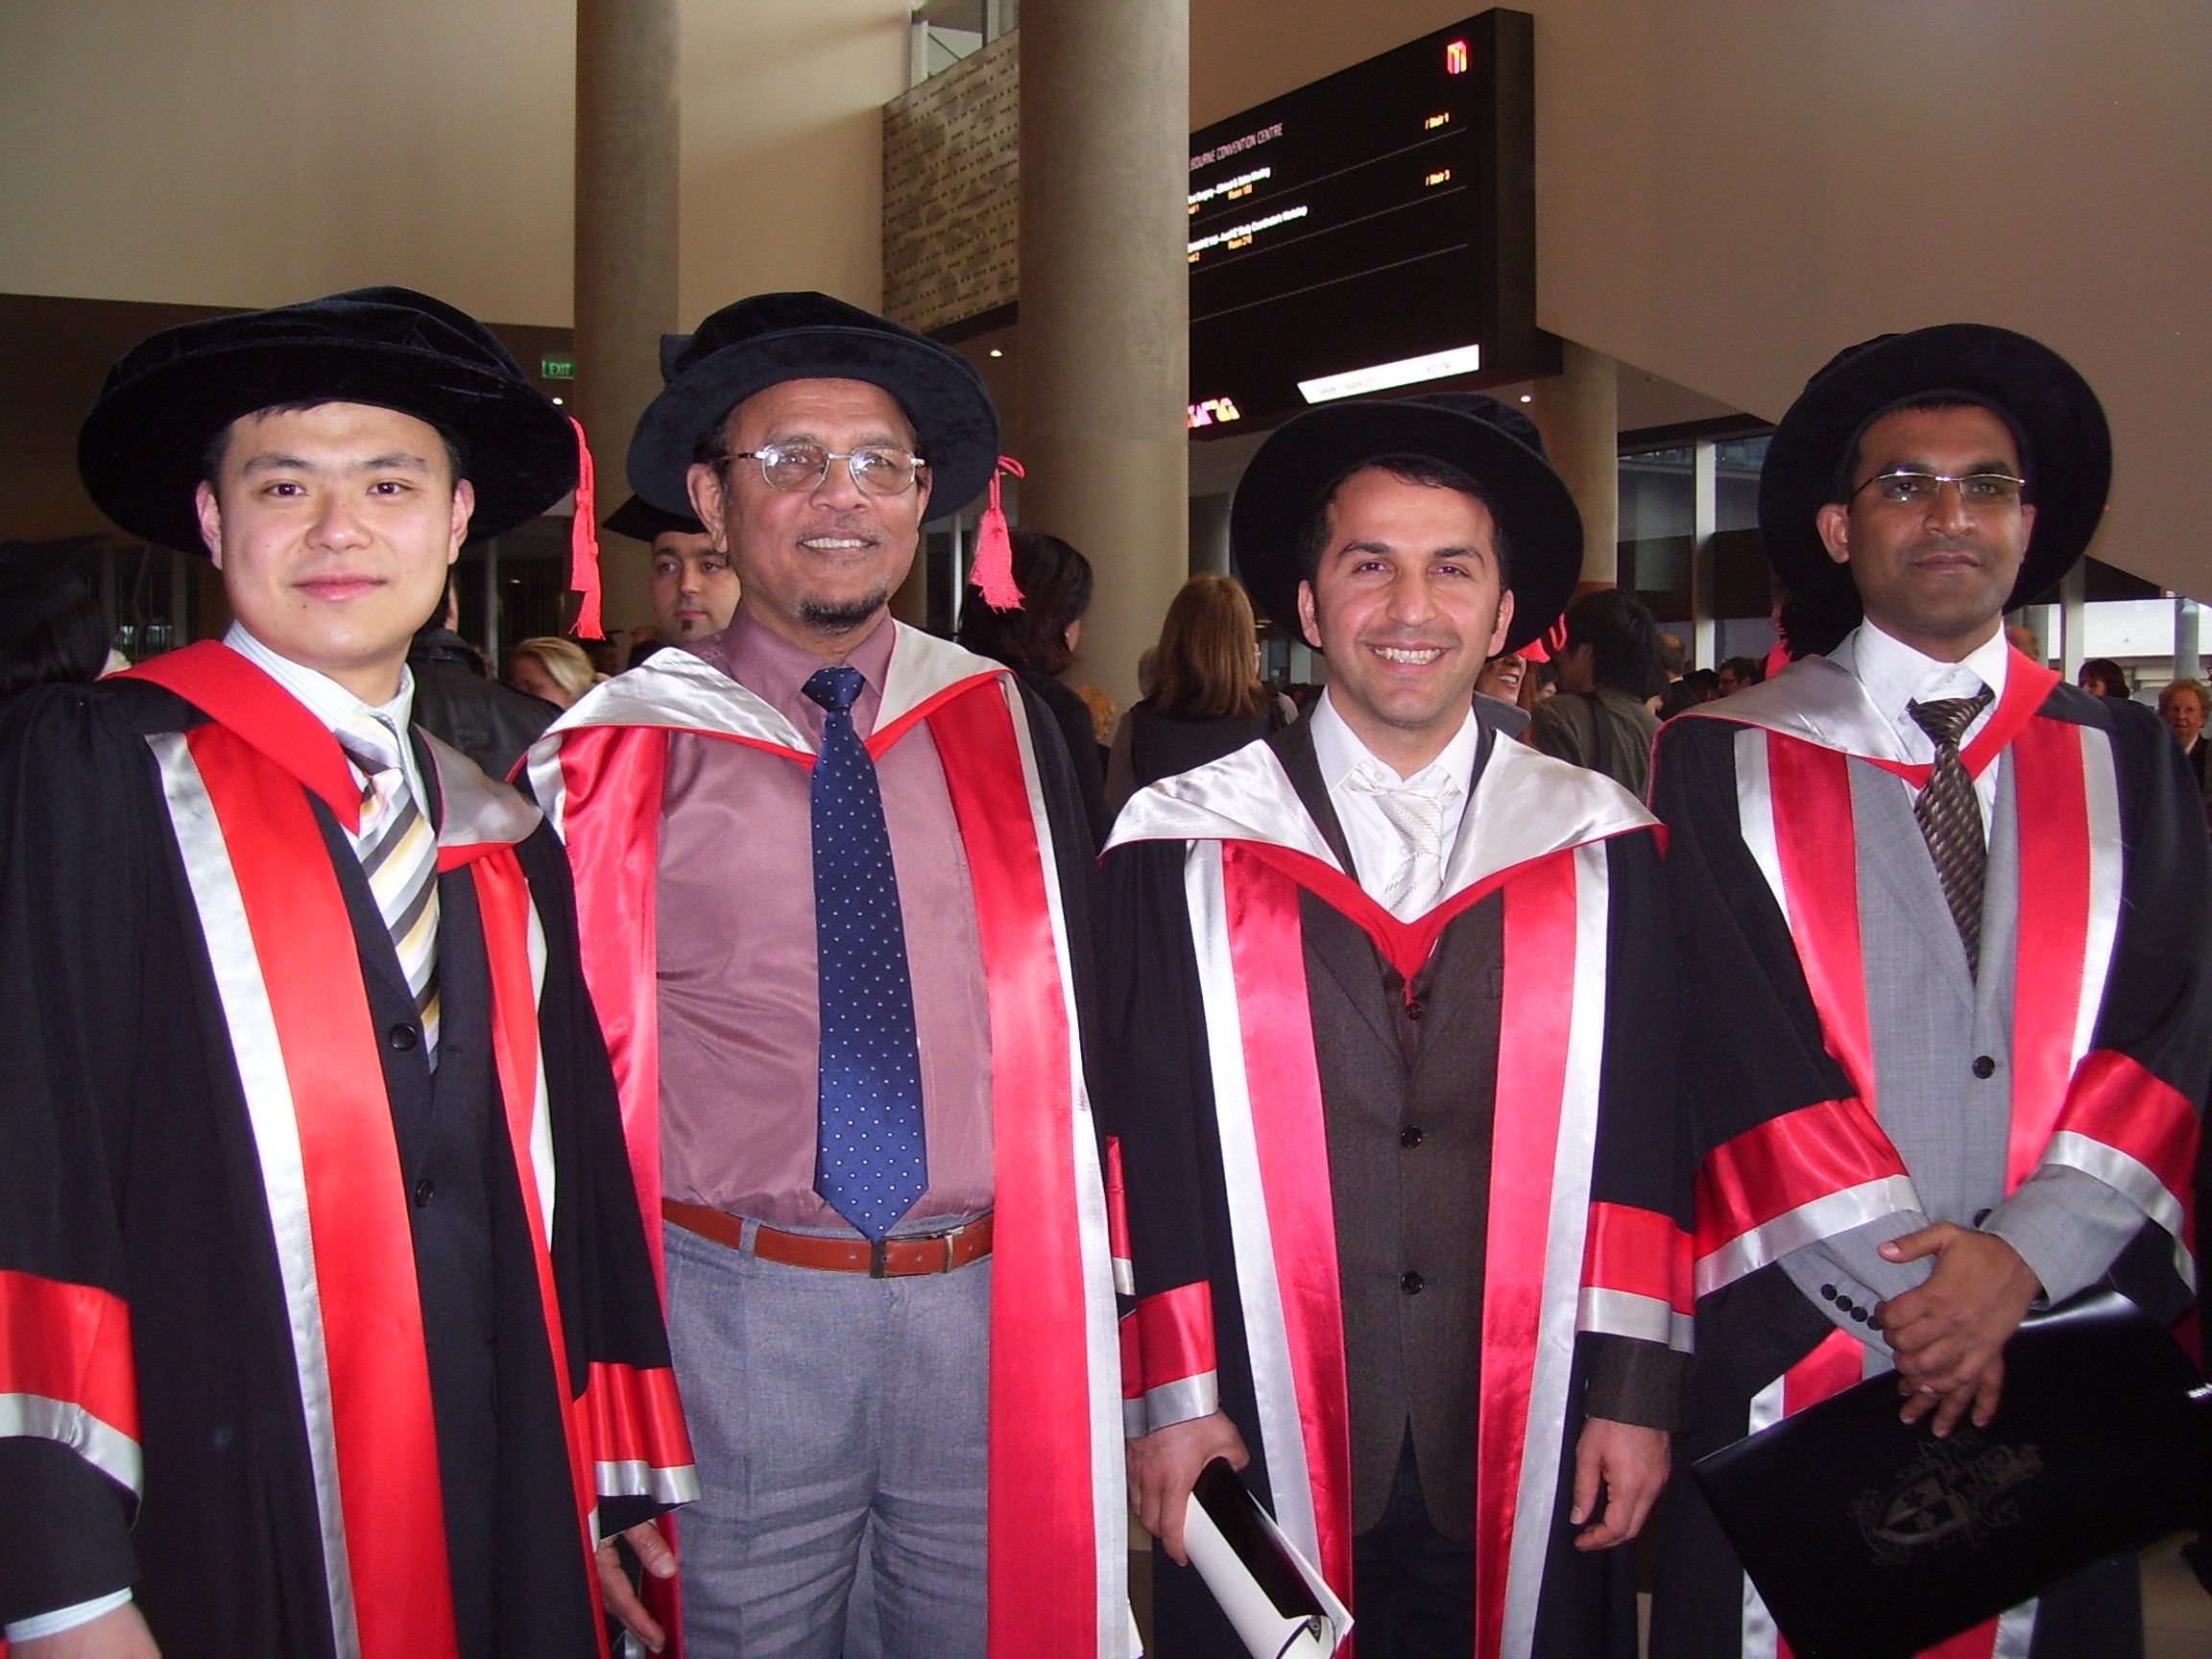 马苏德教授和他的三个站从左边第二个2021年的博士毕业生。都穿长袍斯文本科技大学的颜色,红色、白色和黑色。